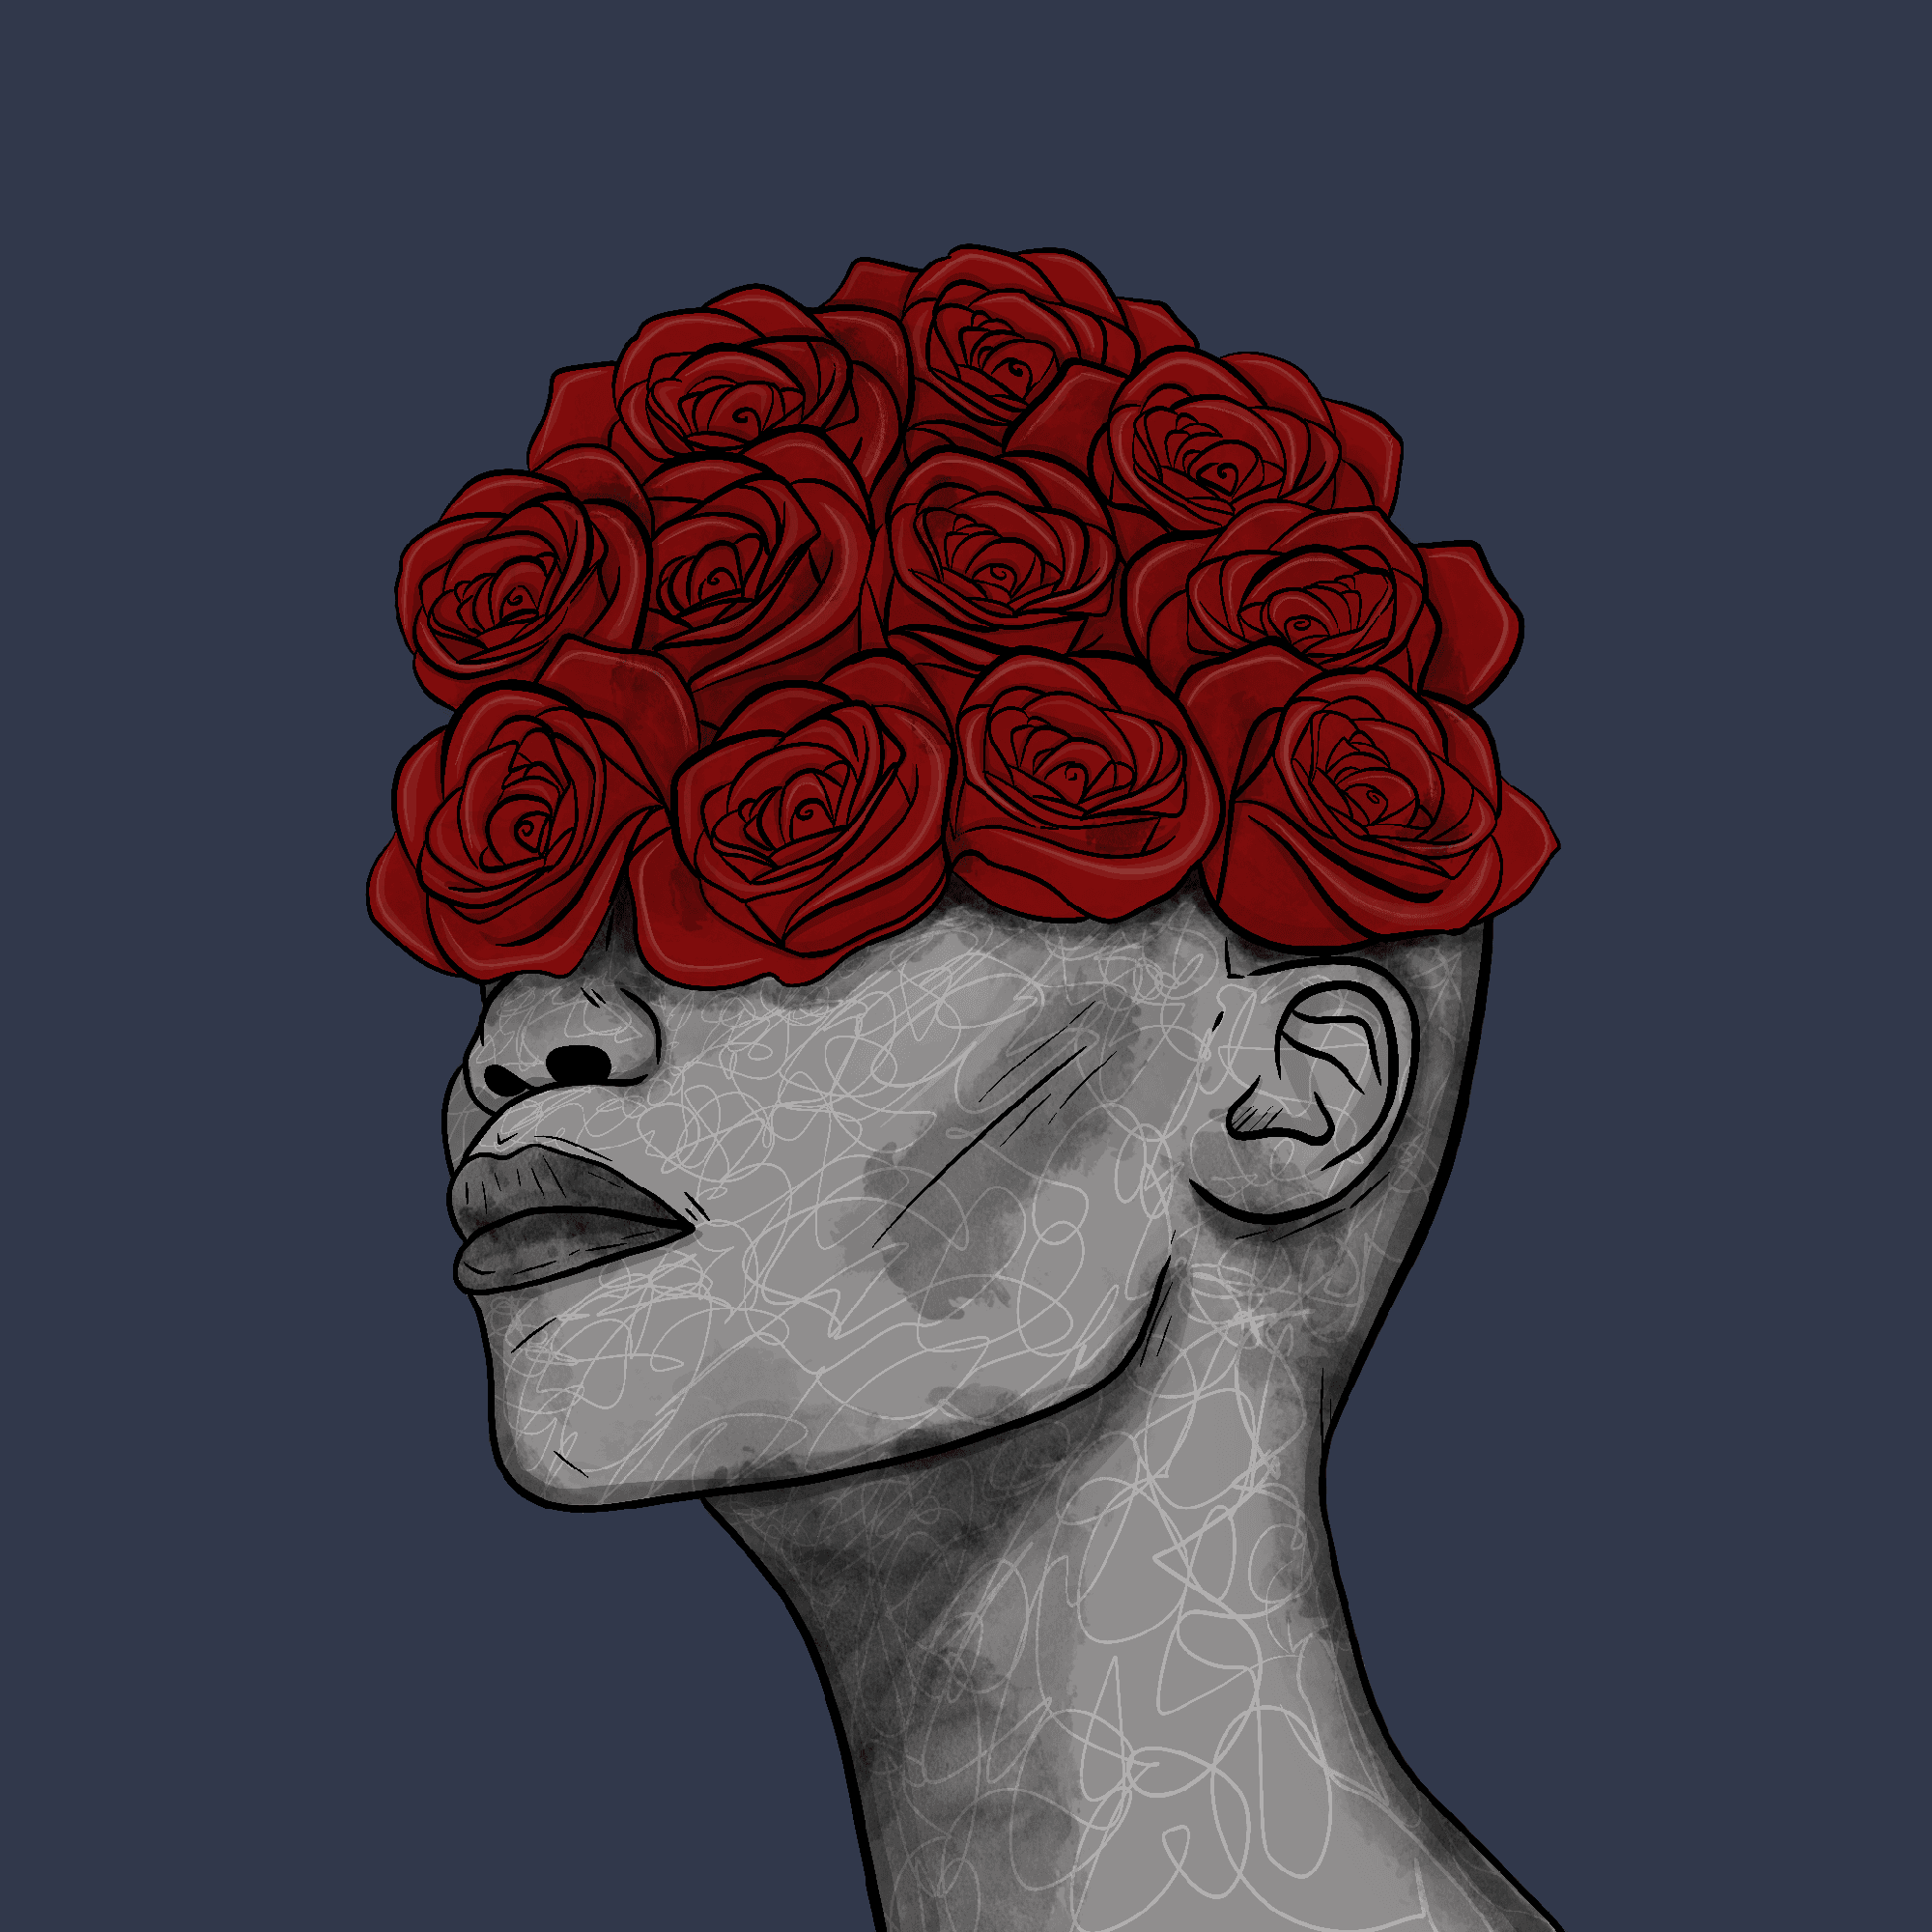 Queen of Roses #185